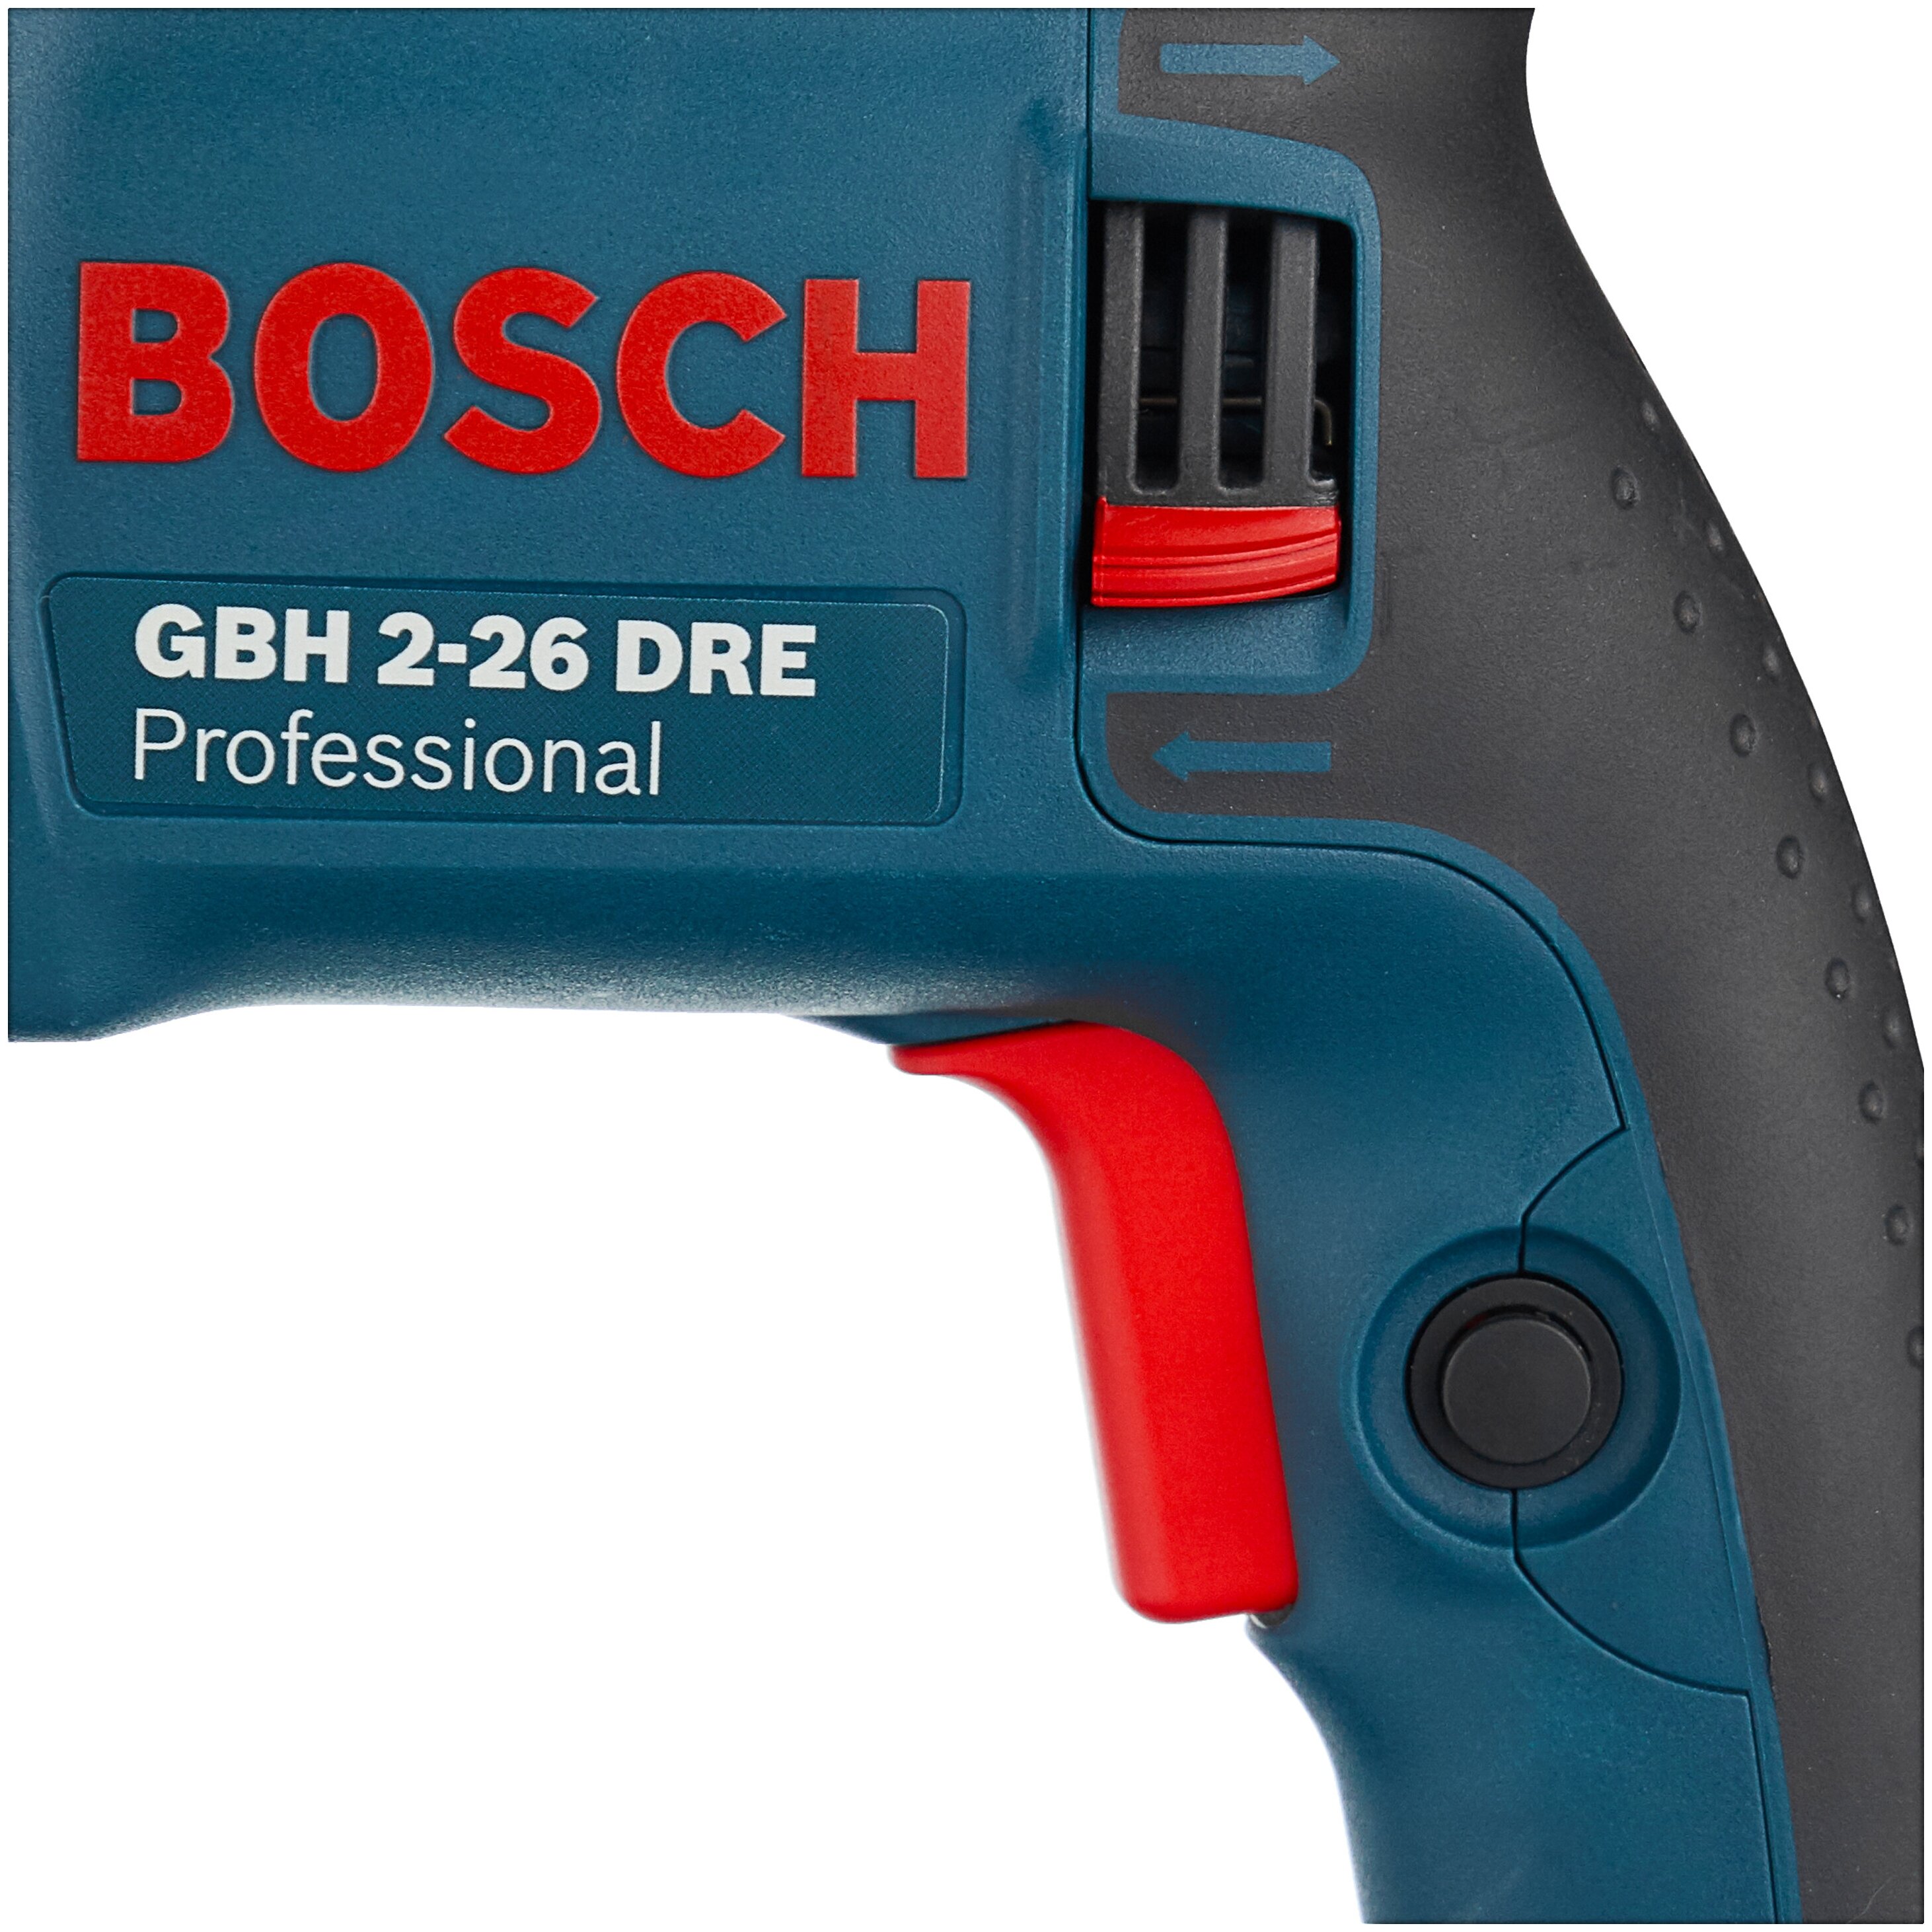 BOSCH GBH 2-26 DRE, 800 Вт - функции: реверс, шуруповерт, регулировка частоты вращения